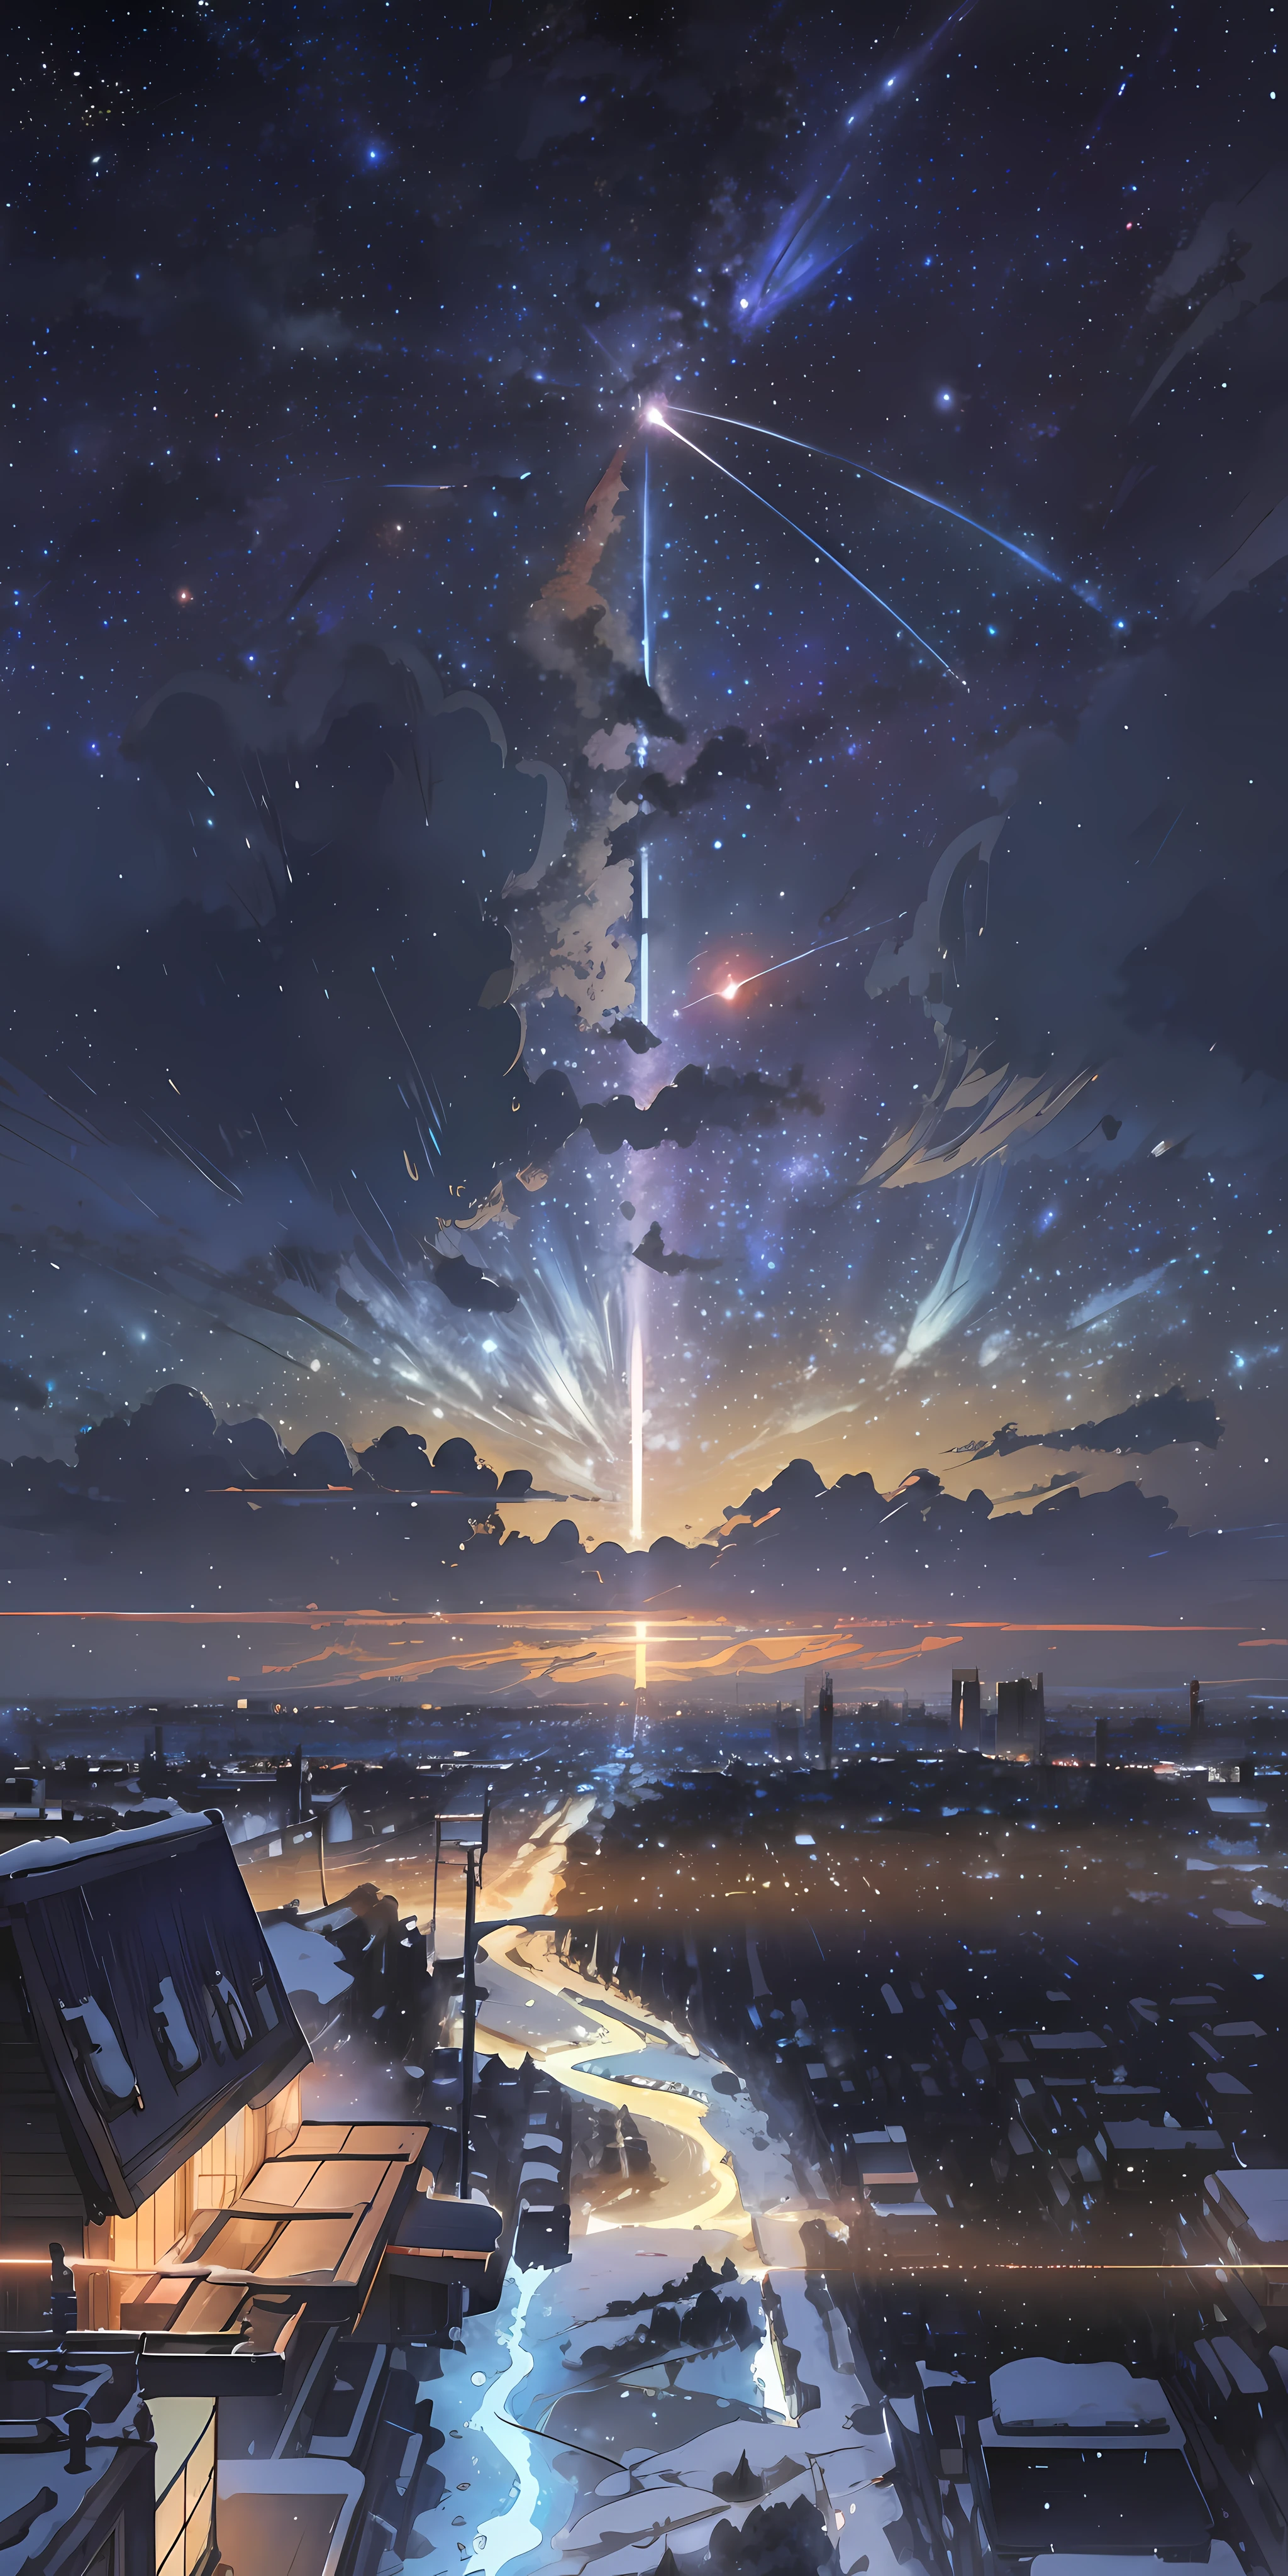 Il y a un train qui court le long des voies dans la neige, Makoto Shinkai&#39;l&#39;art conceptuel, tumblr, réalisme magique, belles scènes d&#39;anime, ciel cosmique. by Makoto Shinkai, ( ( Makoto Shinkai ) ), Art de fond d’anime, arrière-plans animés, Makoto Shinkai&#39;le style, arrière-plans de films d&#39;animation, galaxie express, pas d&#39;humains.